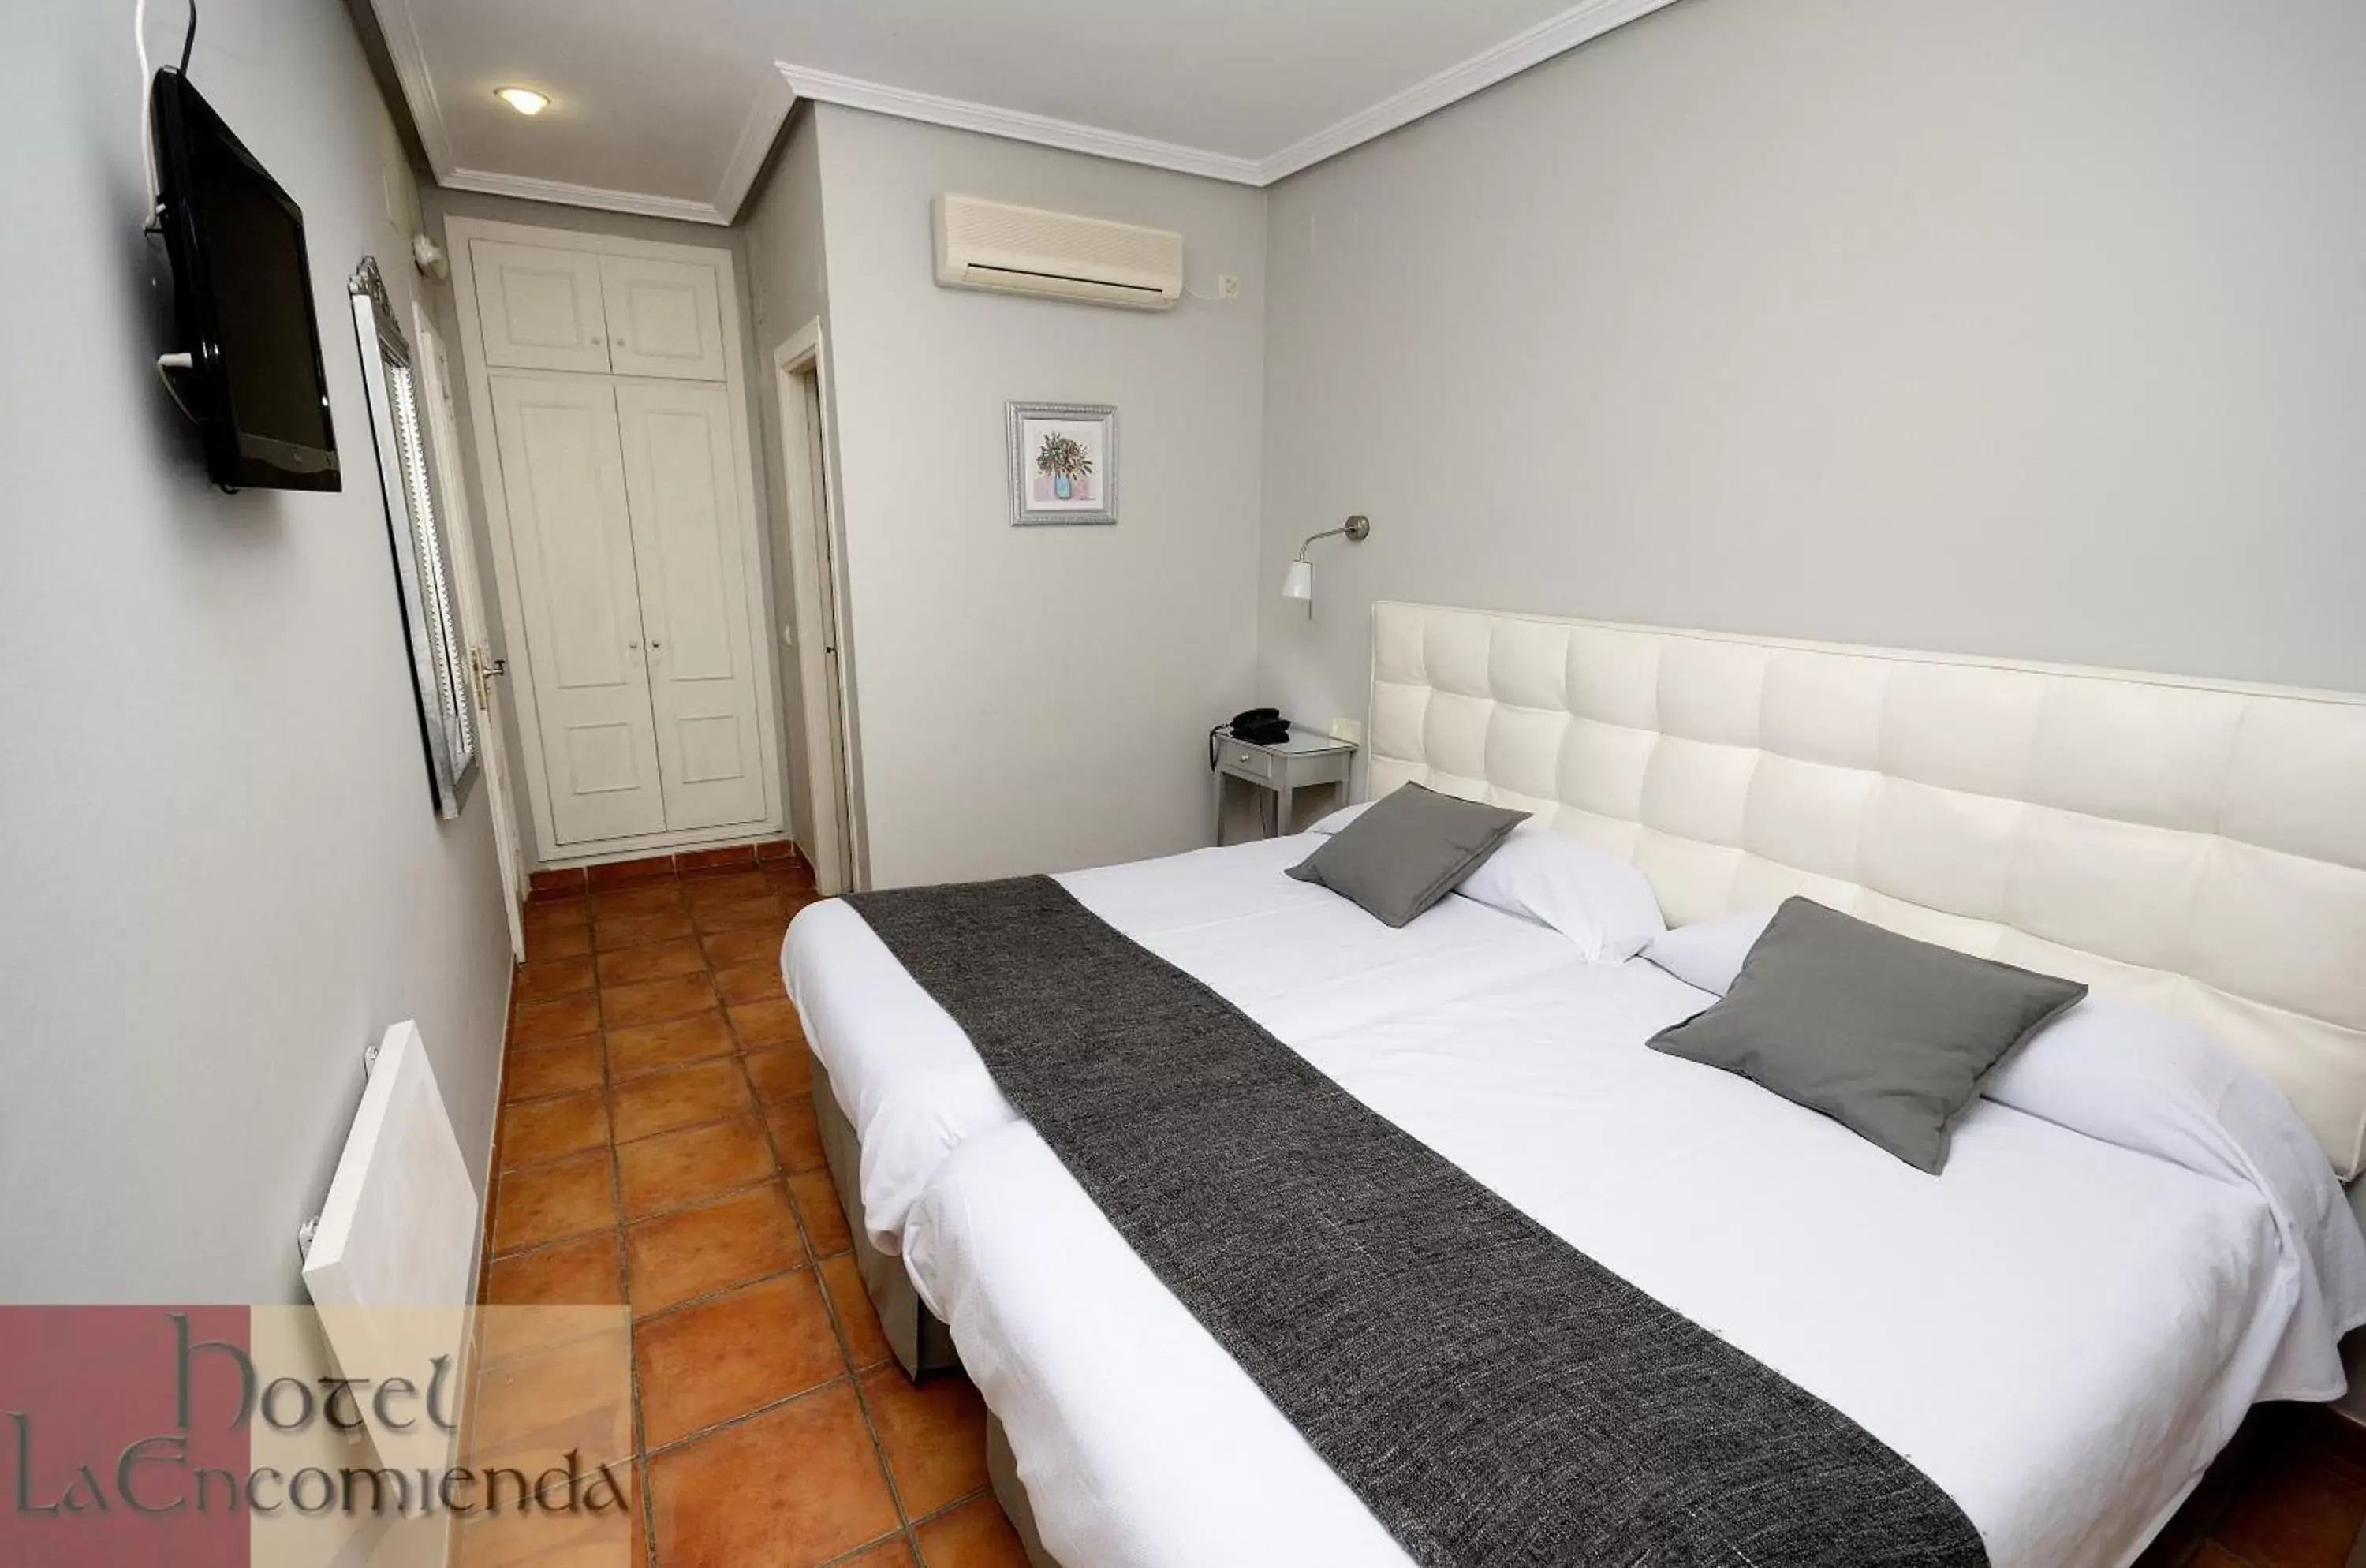 Bed in Hotel La Encomienda